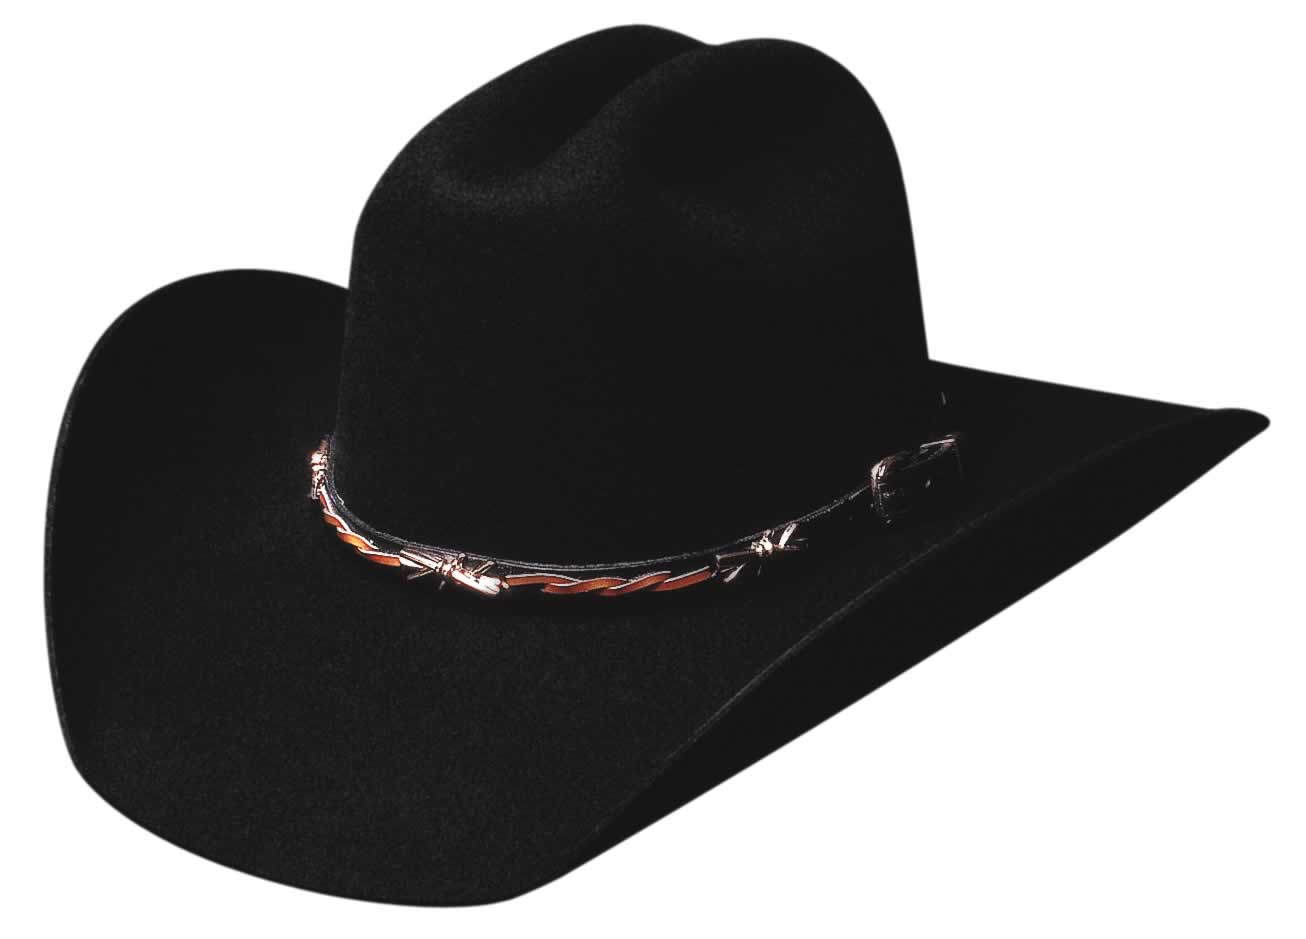 Wool & Fur Cowboy Hats : The Cowboy Way Western Store - Gatlinburg ...